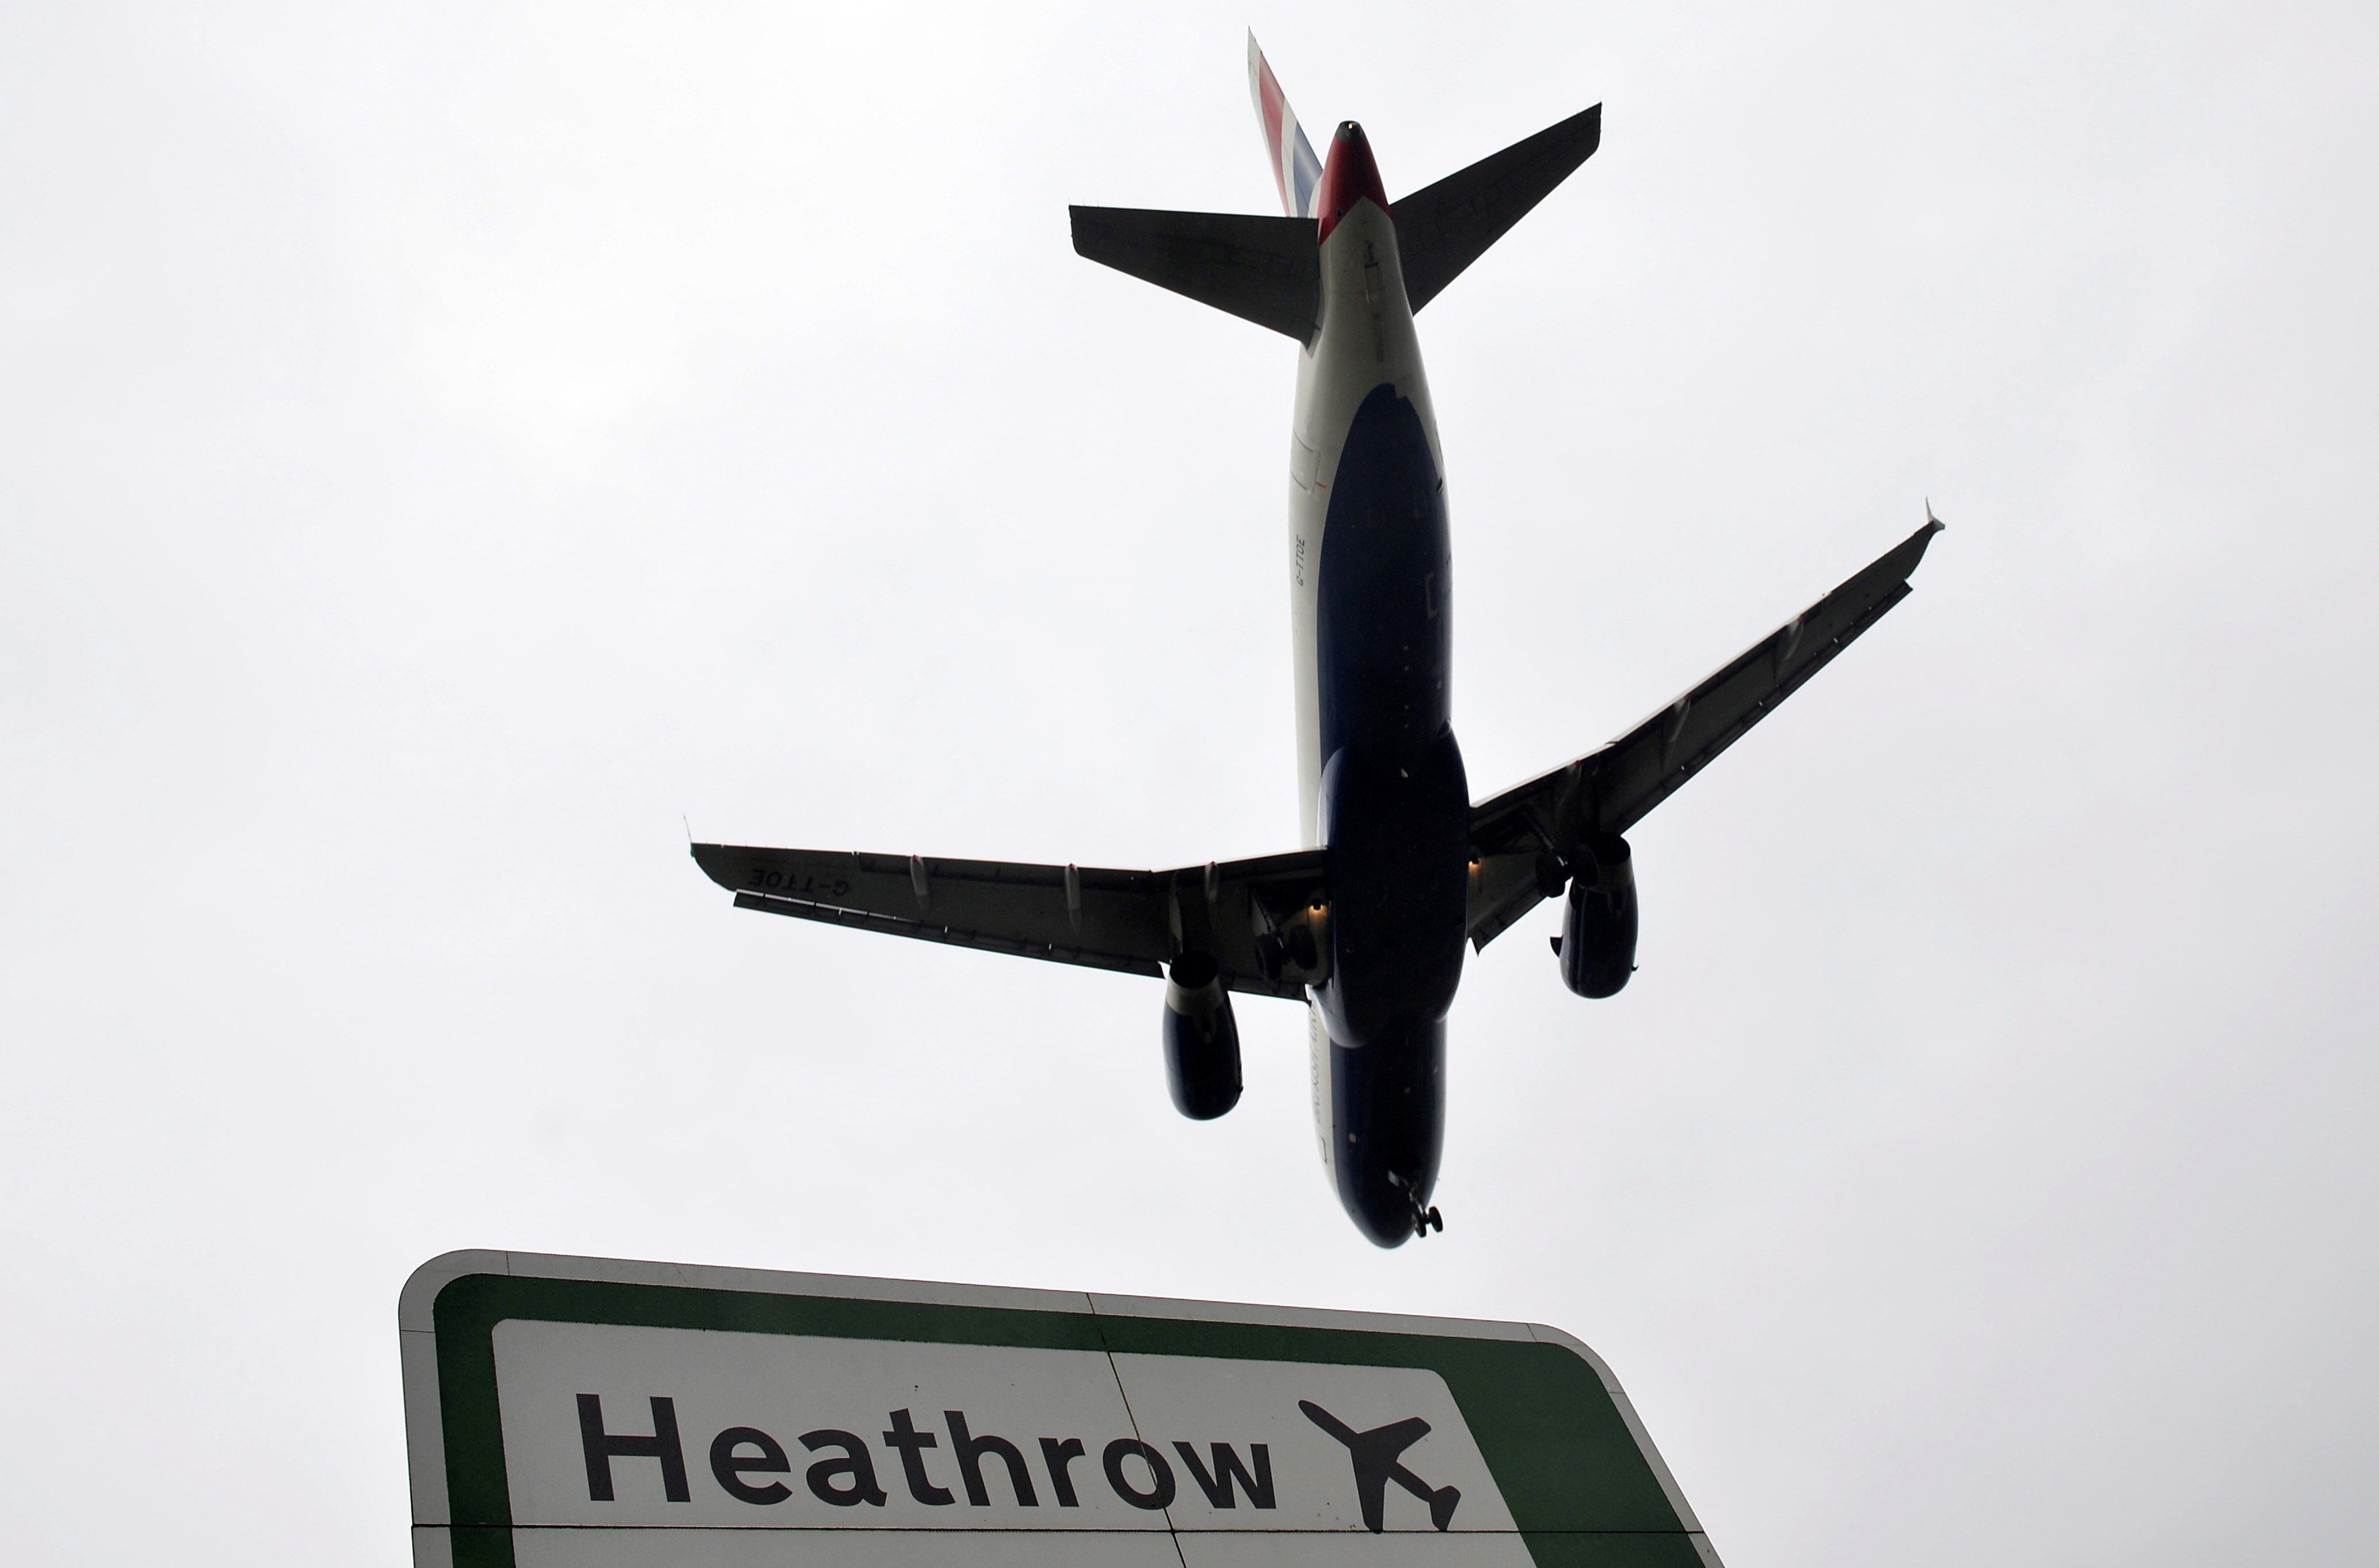 El aeropuerto de Heathrow suspende sus vuelos por culpa de un dron